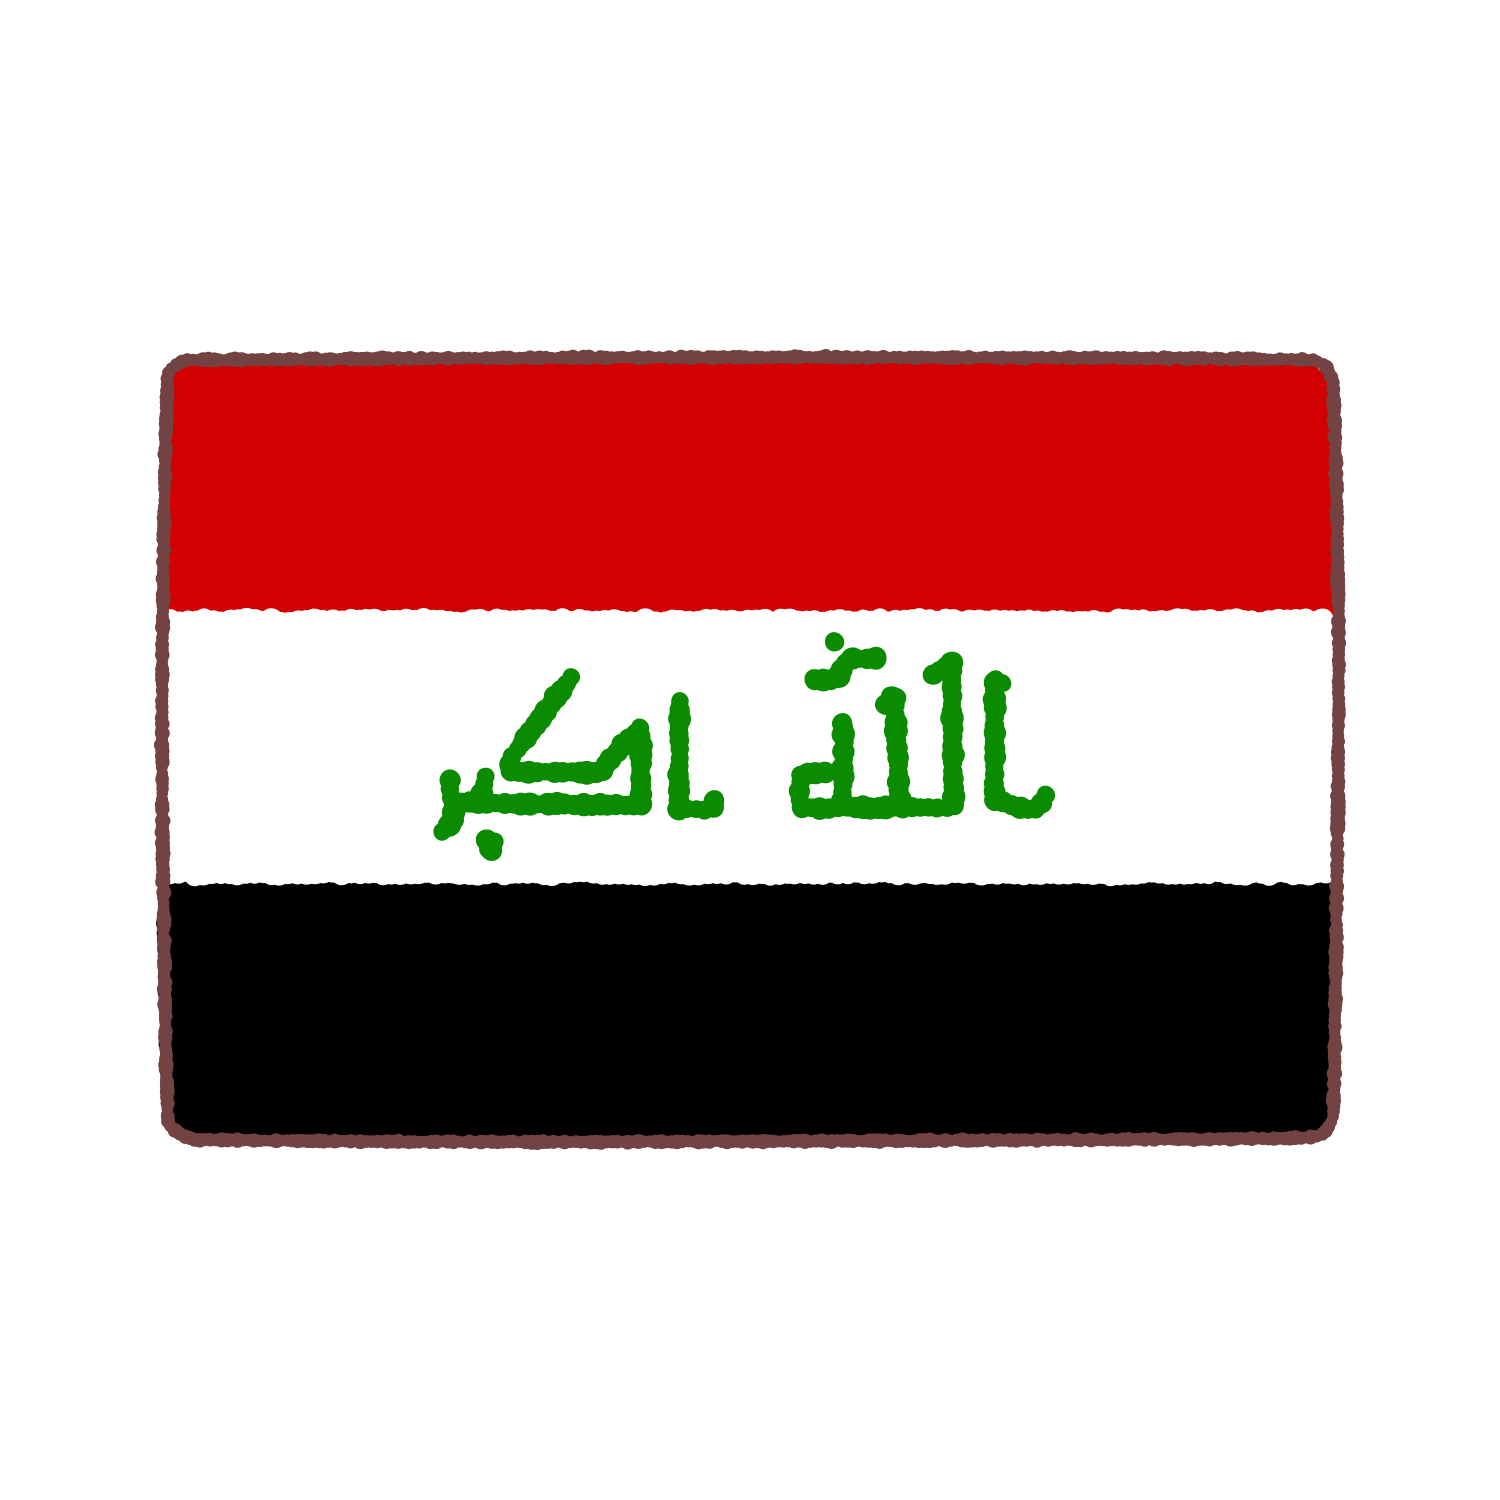 イエメン国旗のイラスト